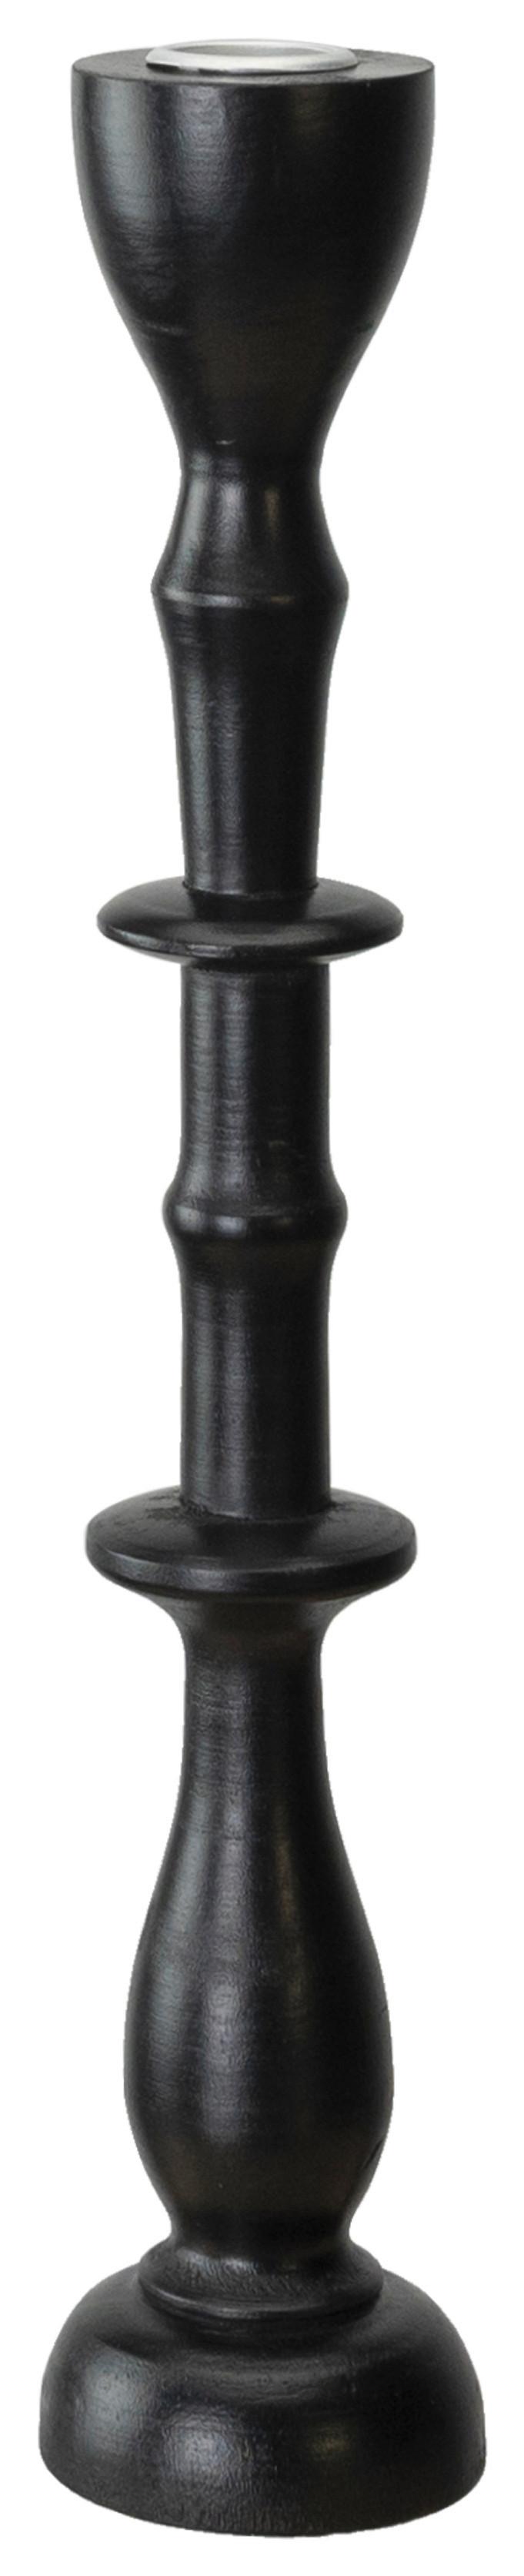 Svietnik Na Dlhé Sviečky Noir, Výška: 33cm - čierna, kov/kompozitné drevo (7,3/33,7cm) - Modern Living